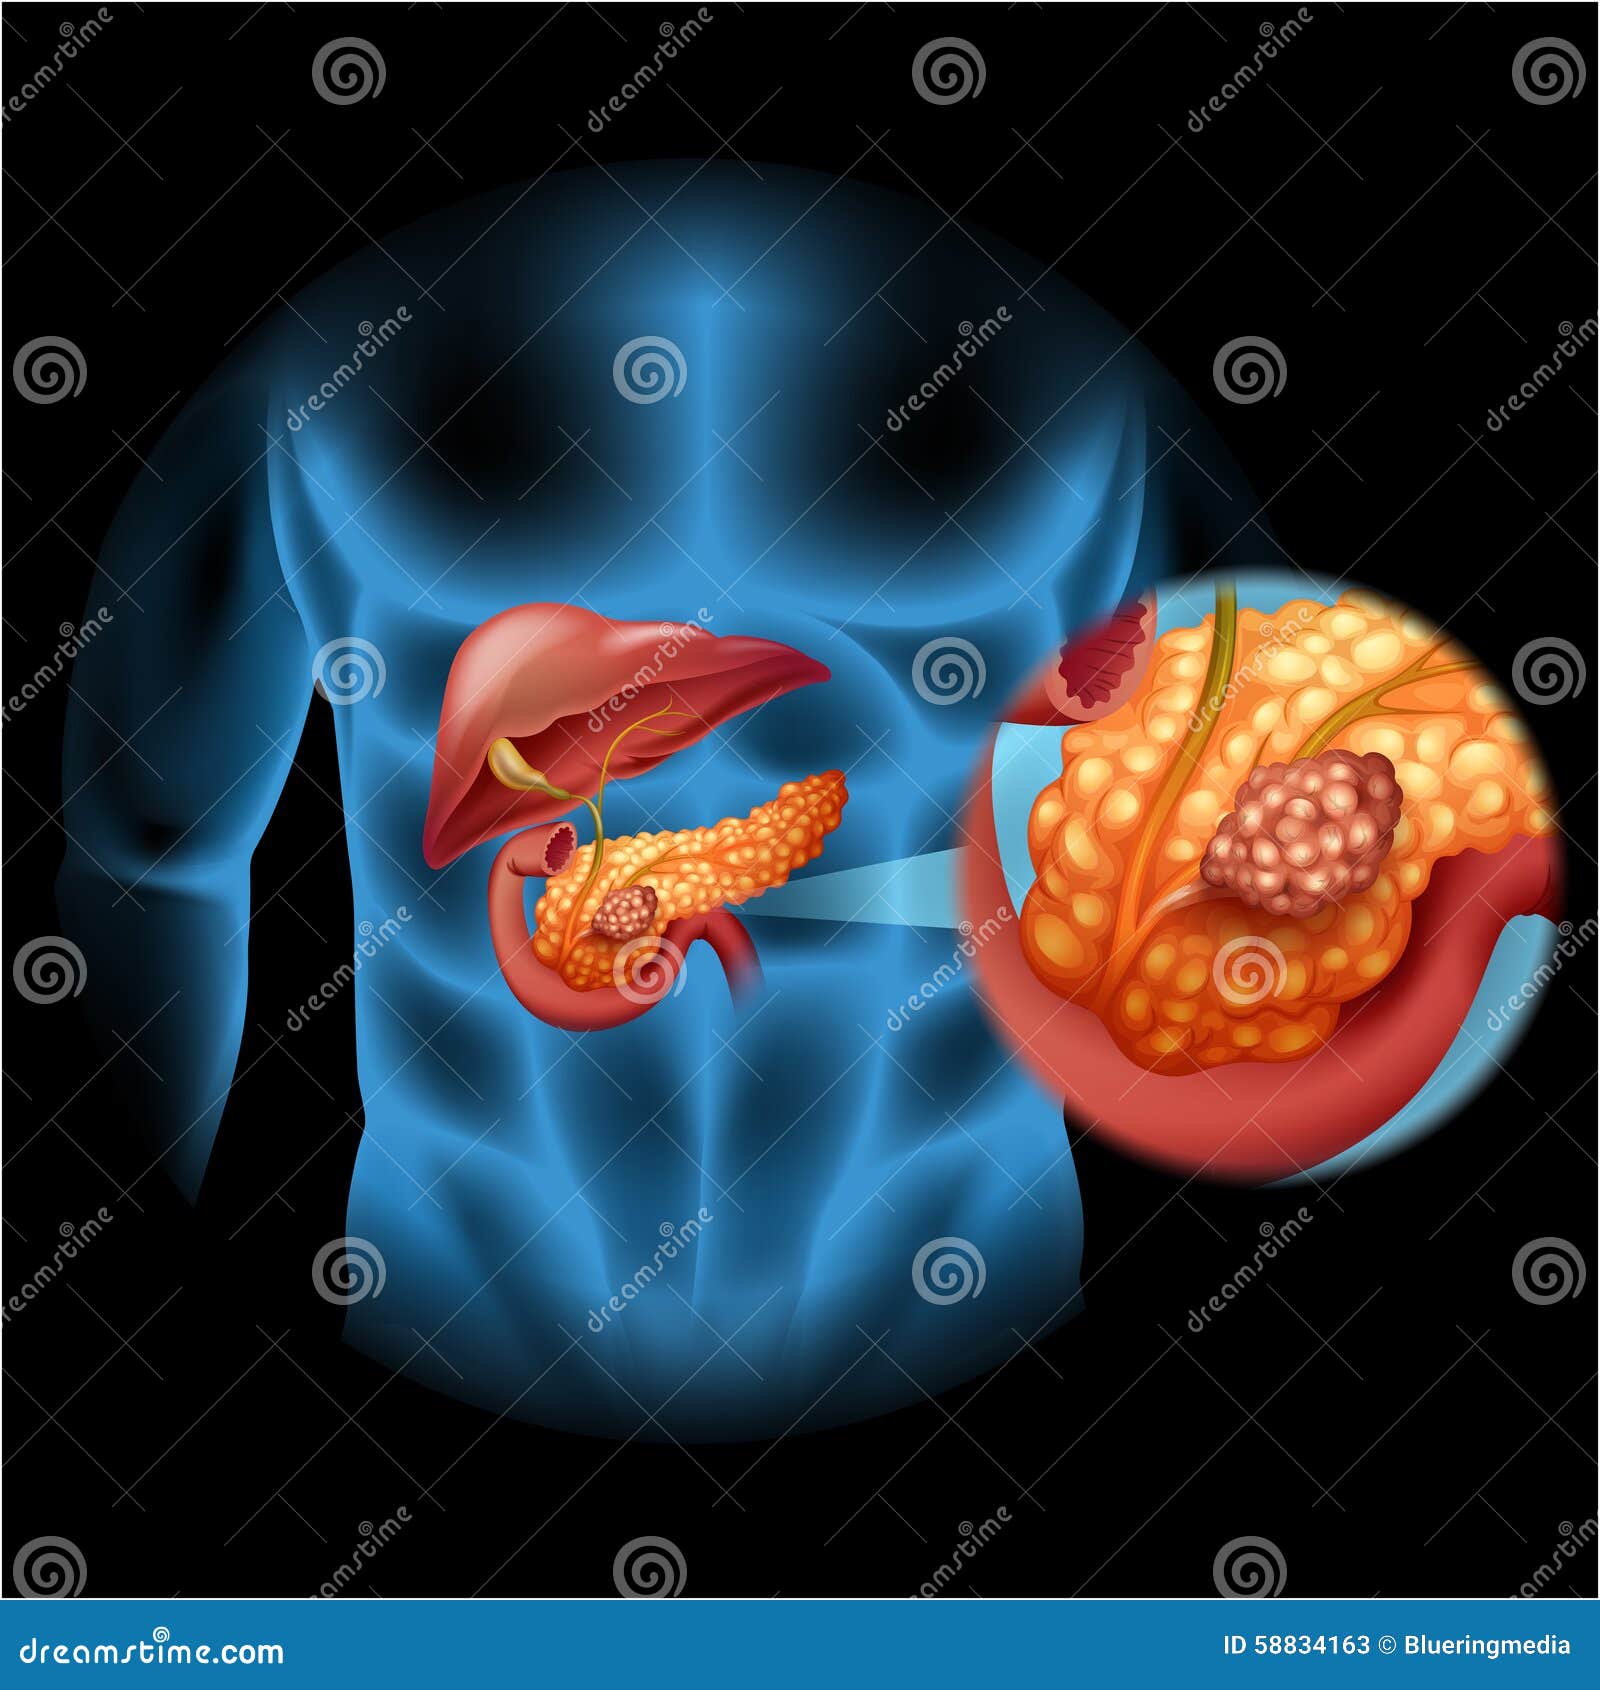 Pancreas Cancer Diagram In Human Body Stock Vector